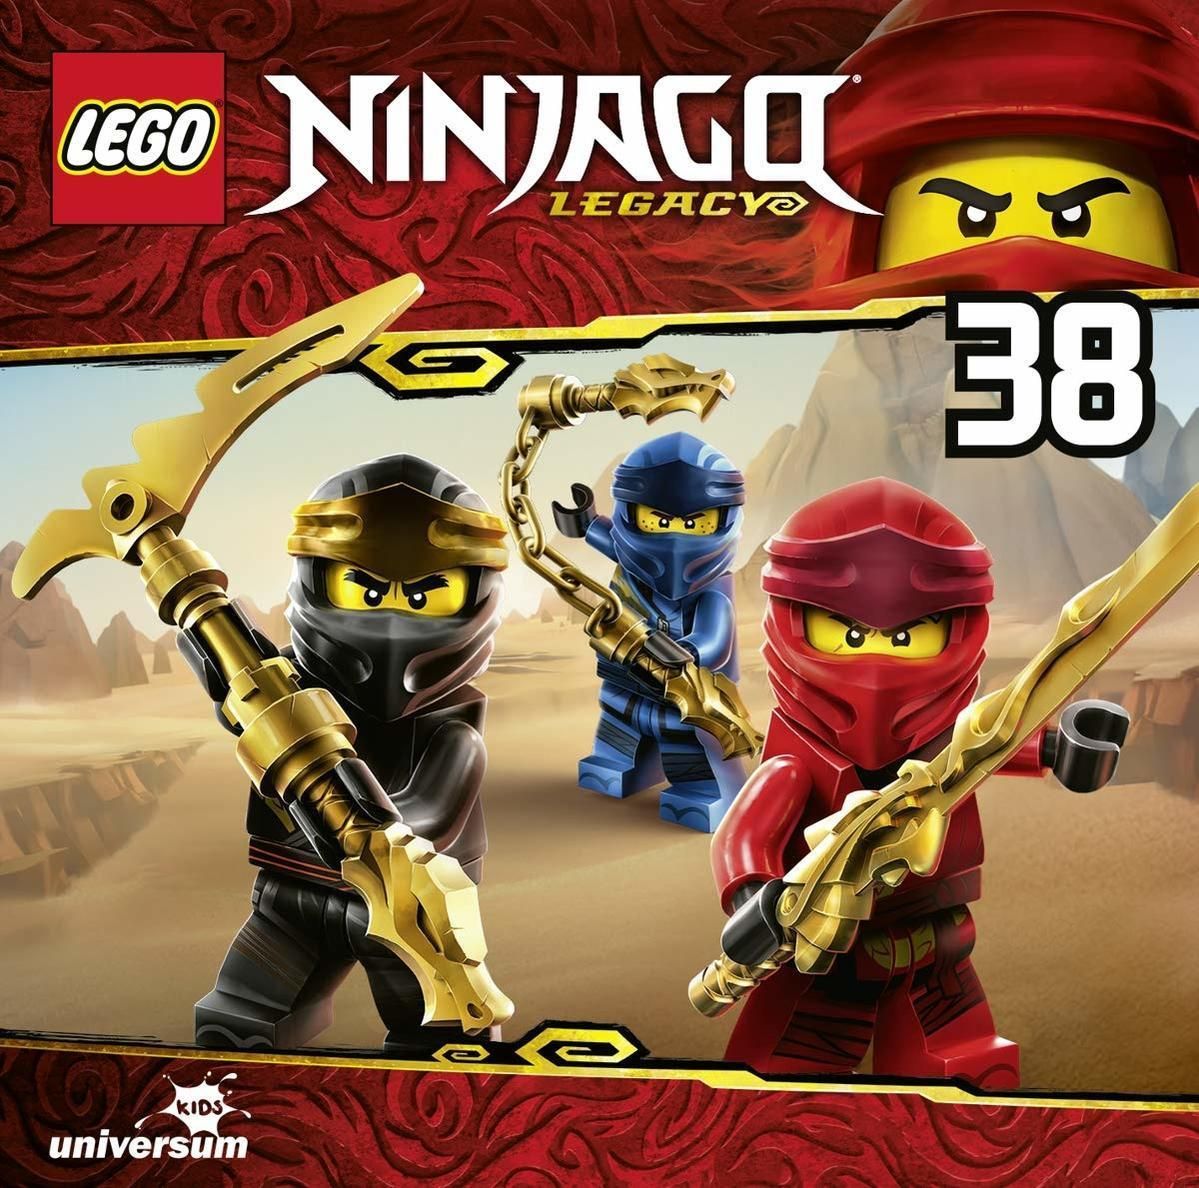 LEGO Ninjago (38) (CD(s))